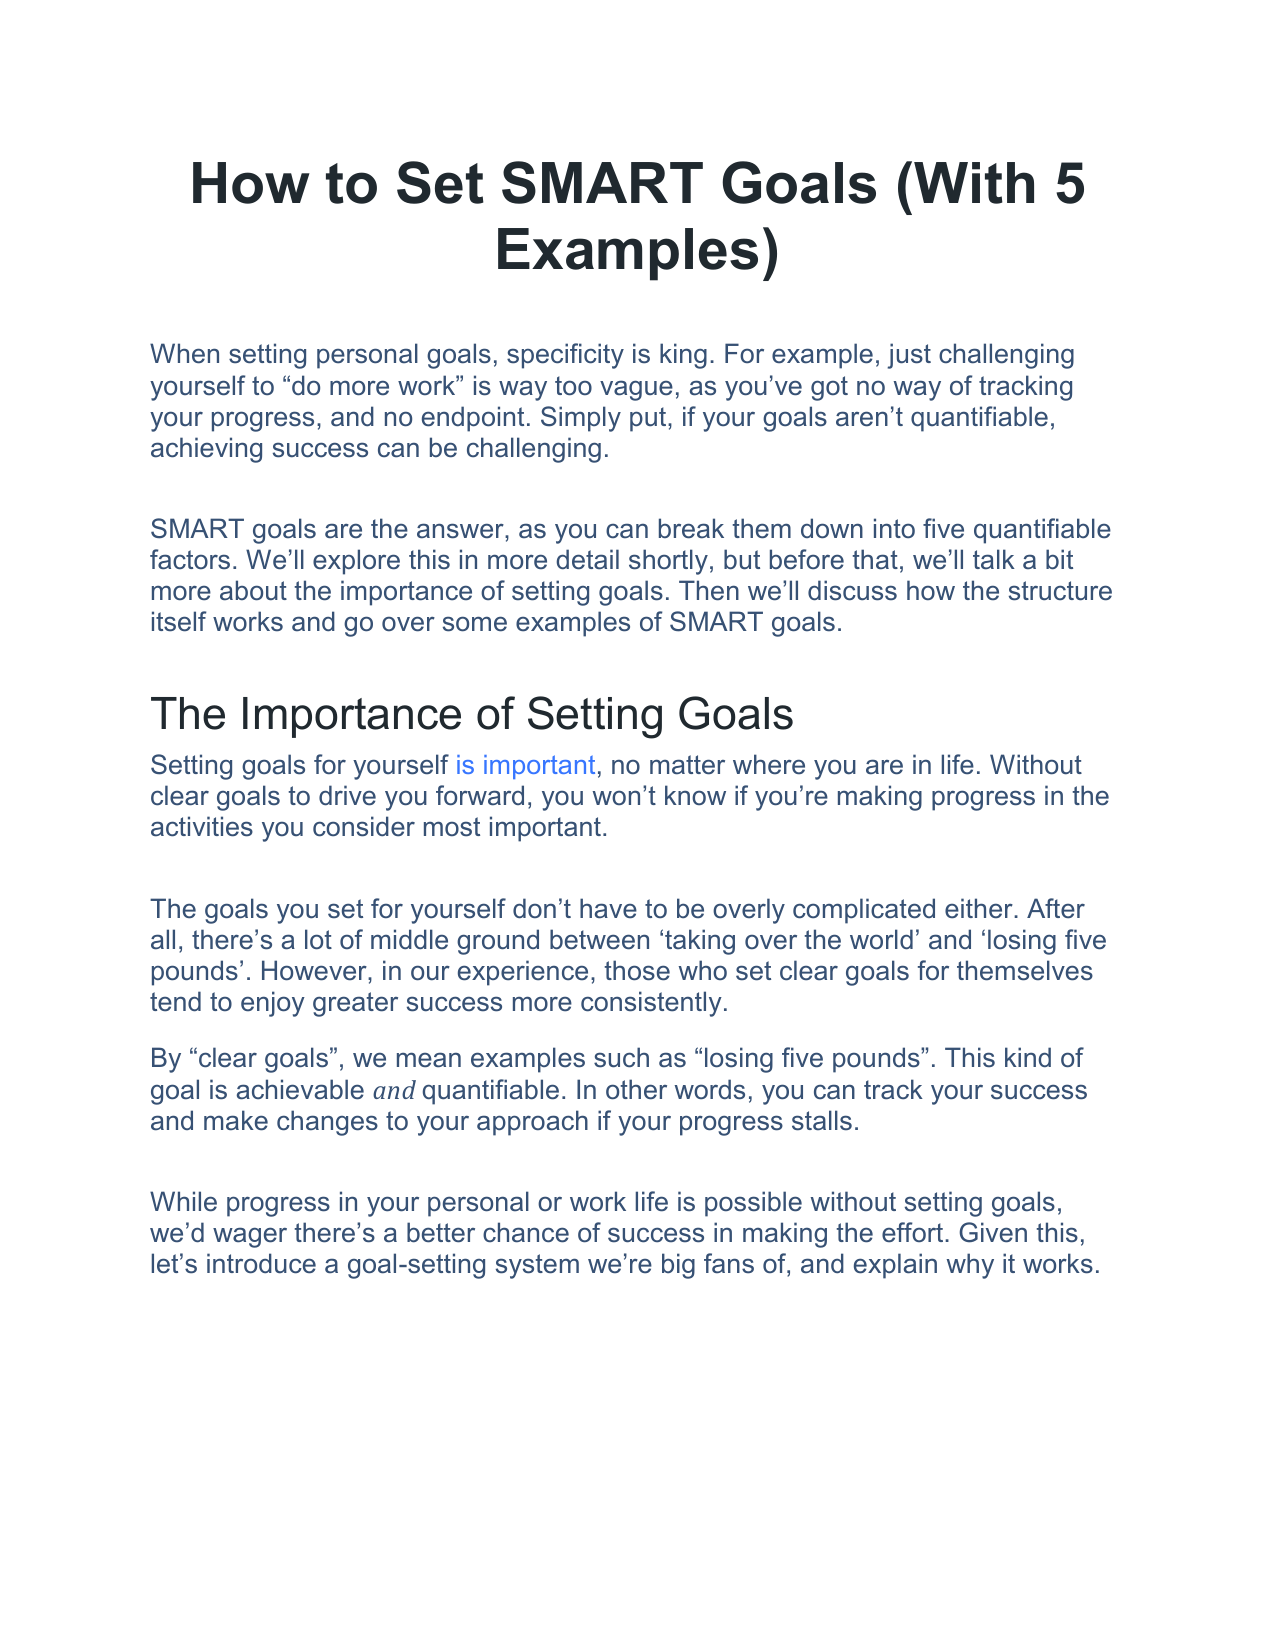 smart goals essay pdf